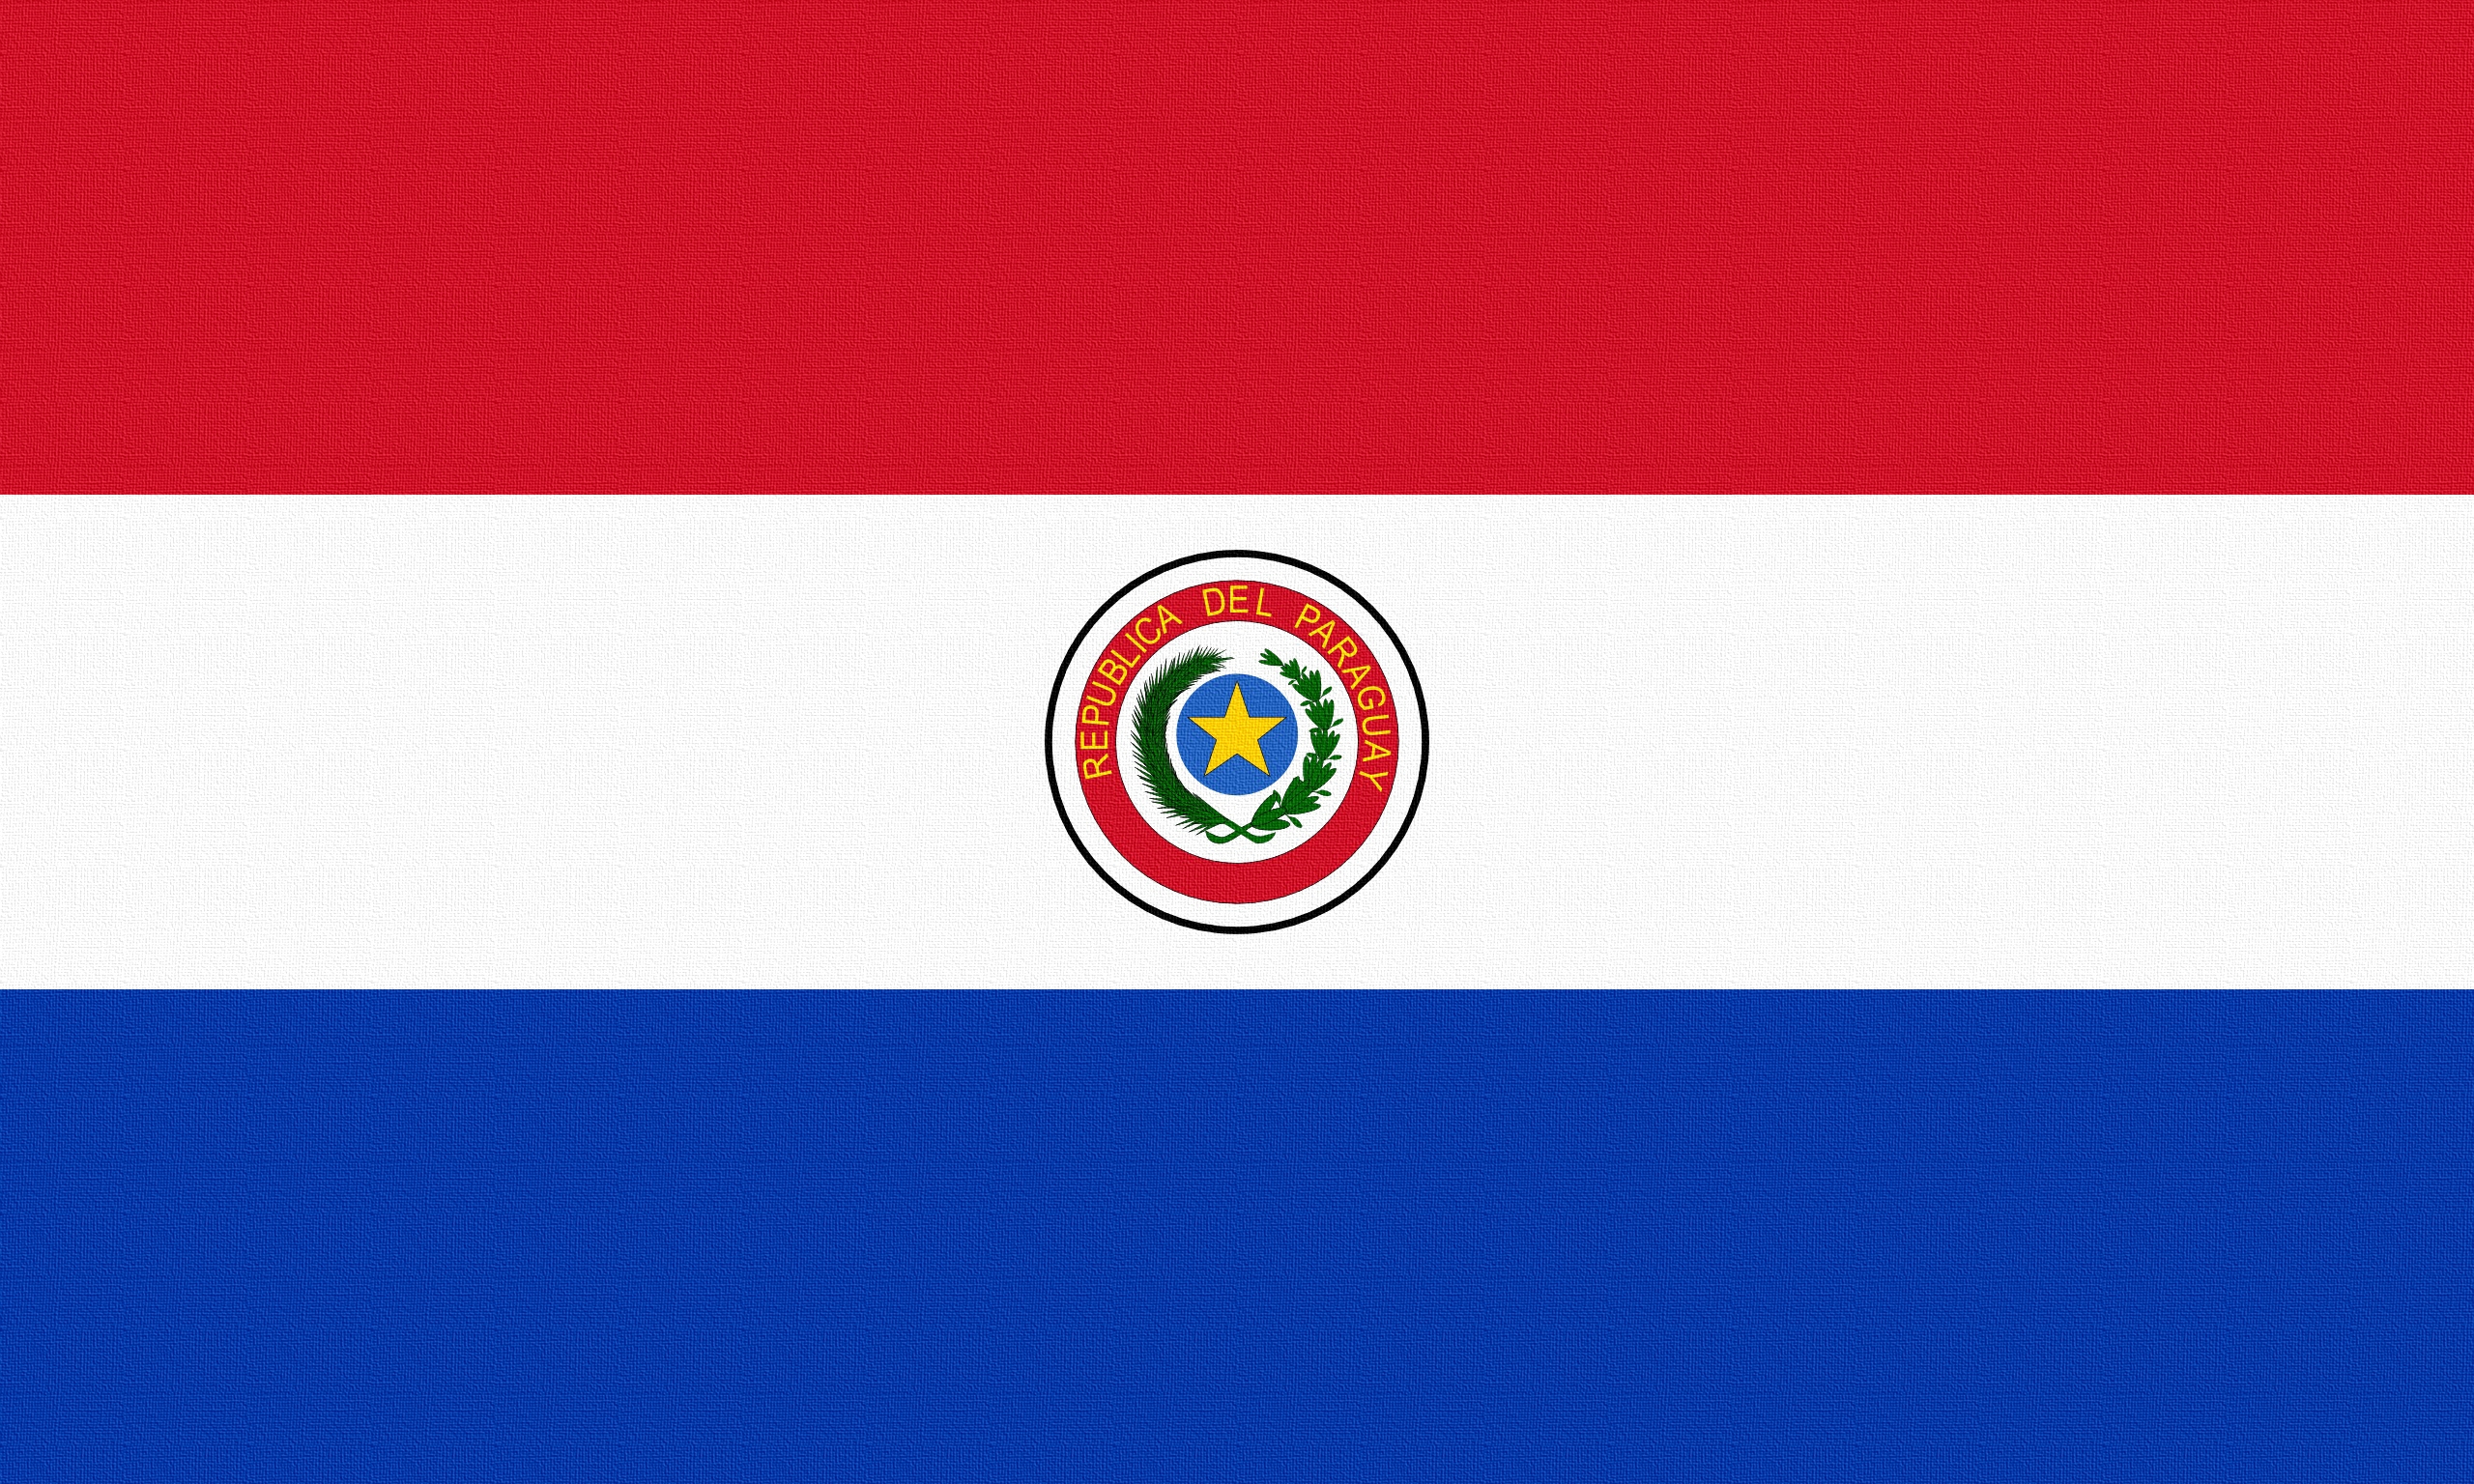 Скачать обои бесплатно Парагвай, Разное, Линии, Флаг картинка на рабочий стол ПК